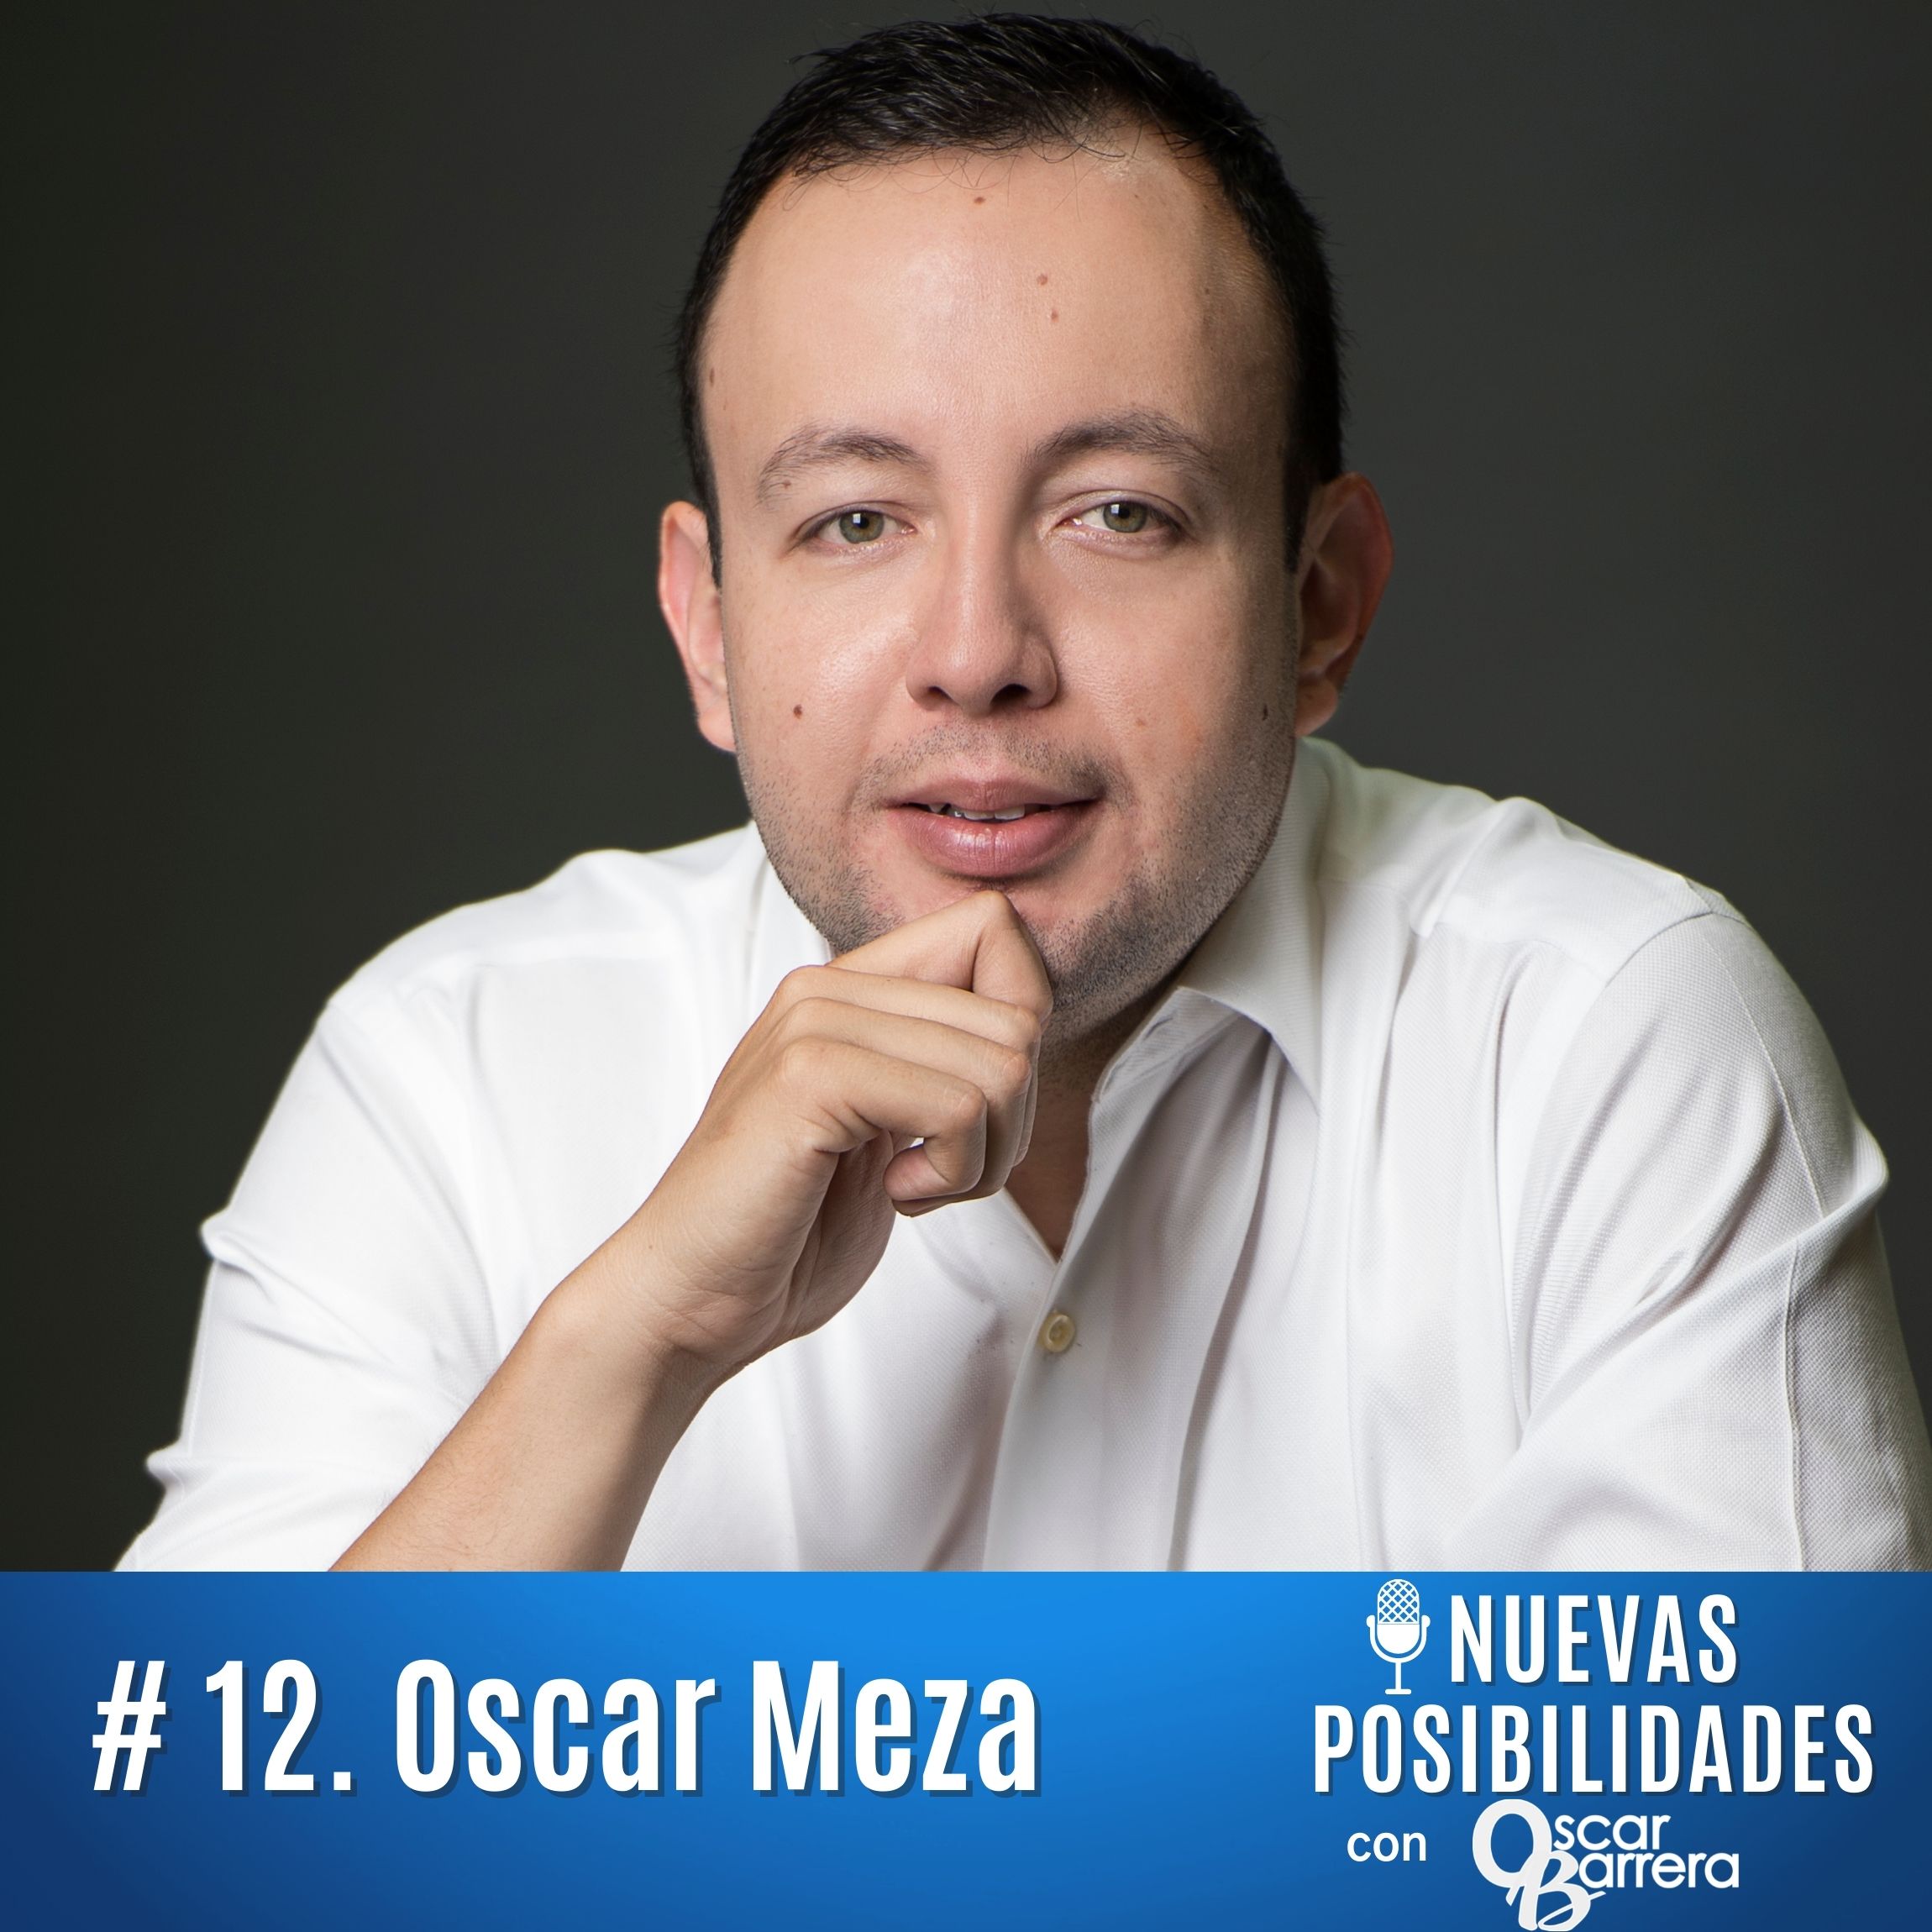 Episodio 12. Oscar Meza: Creatividad y conexión con clientes en el diseño de productos. El caso de Grupo Coppel y su cultura de innovación corporativa